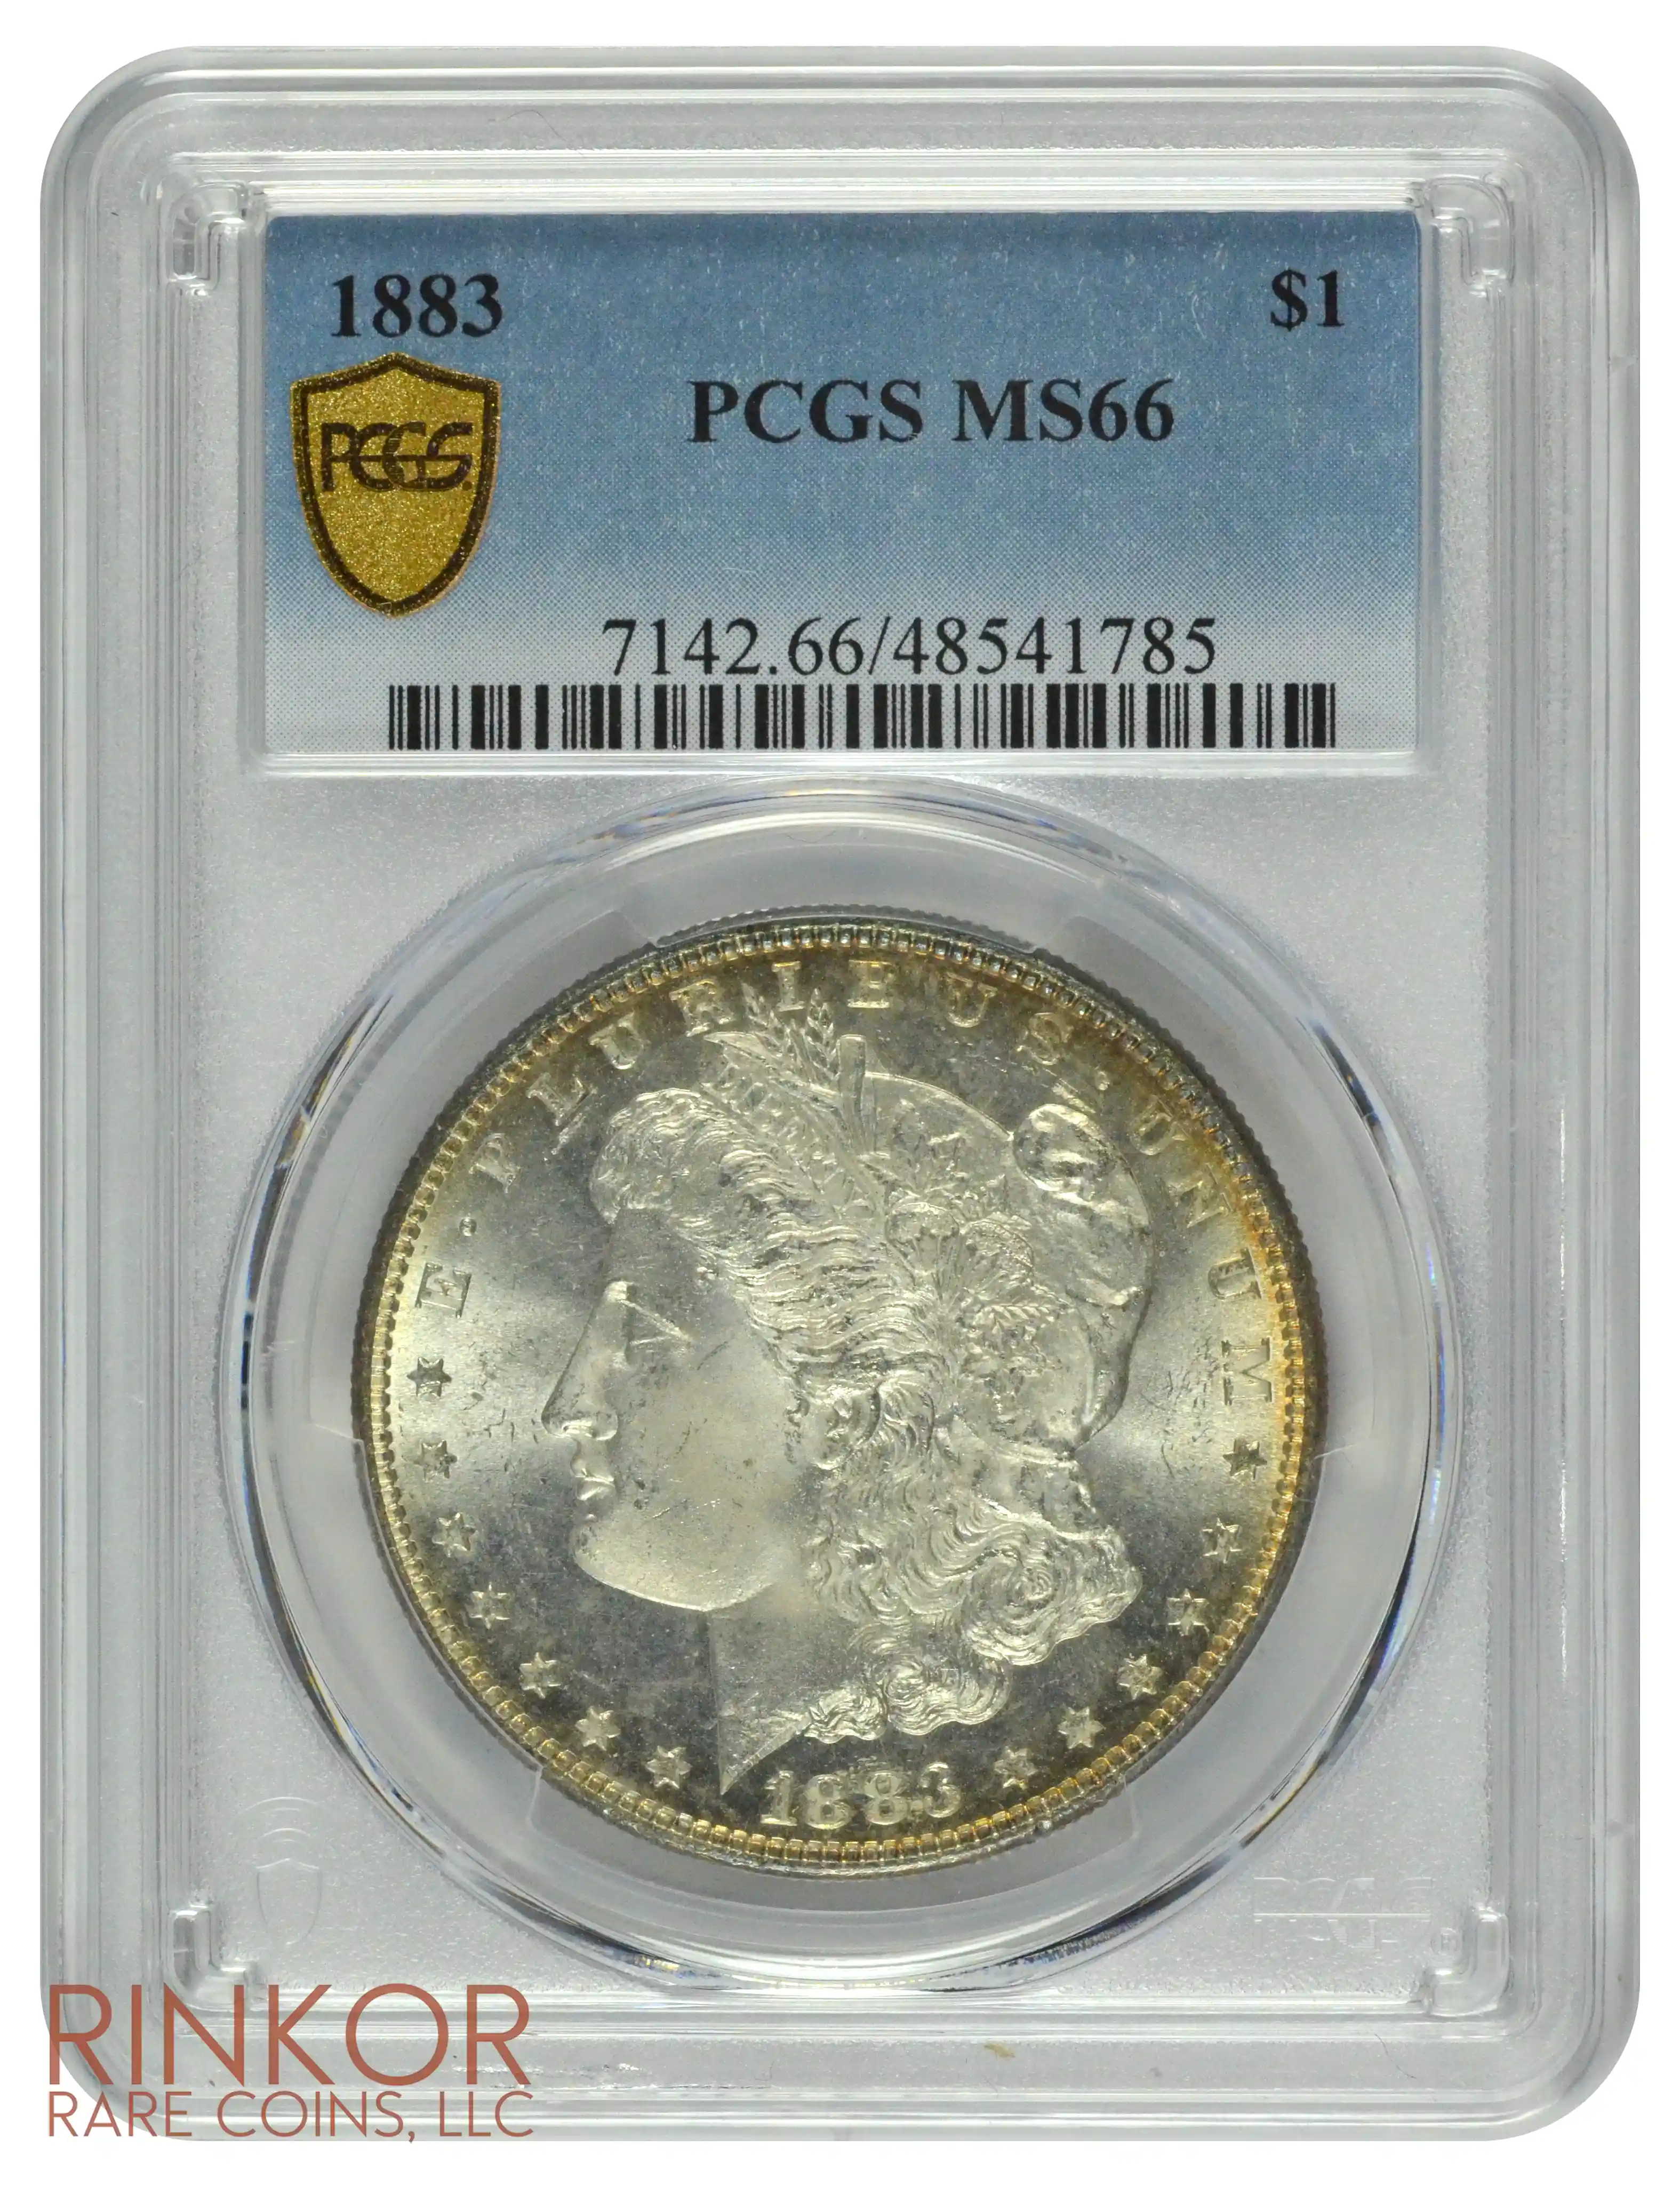 1883 $1 PCGS MS 66